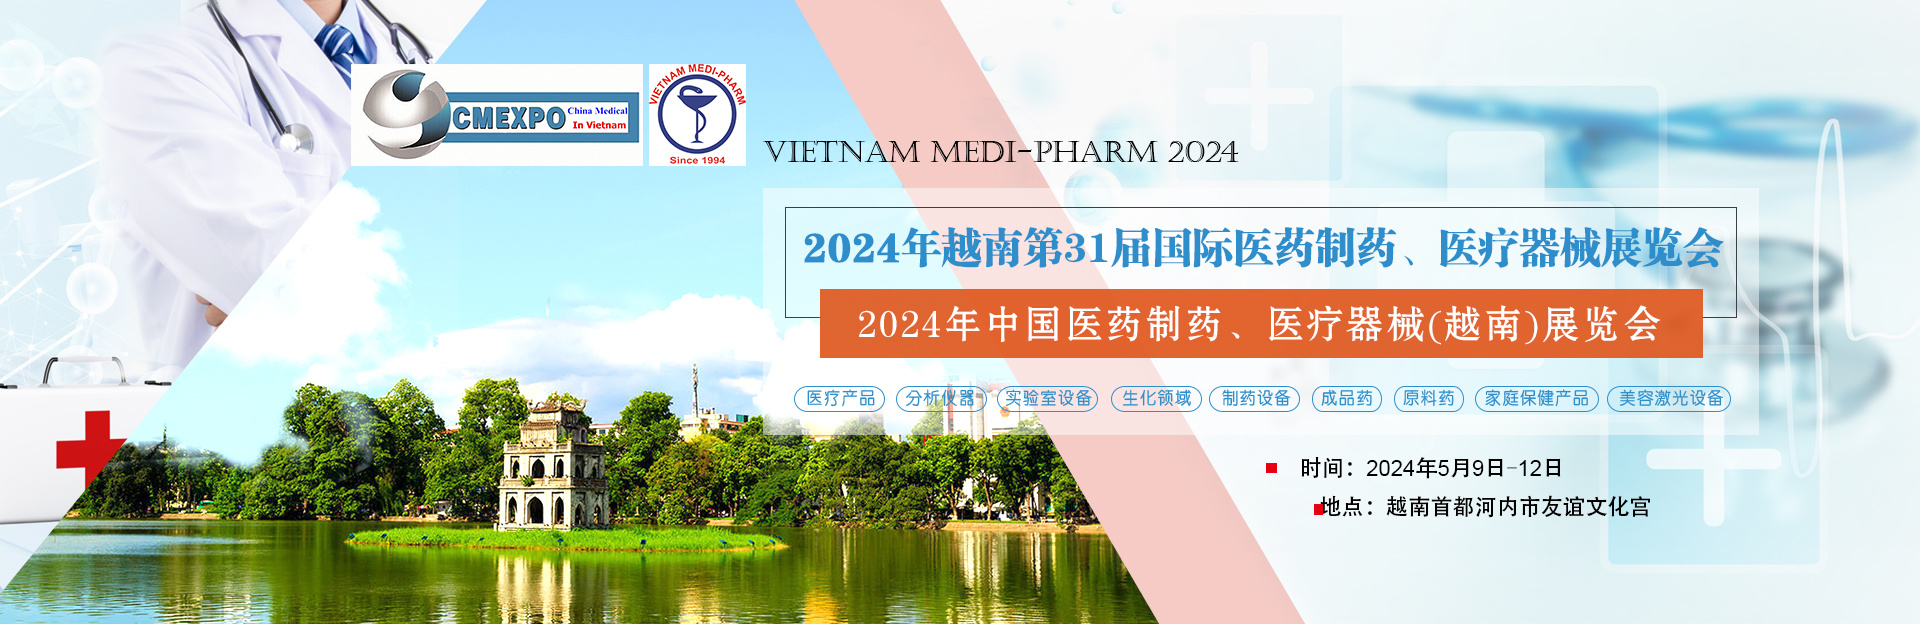 2024年越南河内国际医疗展 VIETNAM MEDI-PHARM 2024